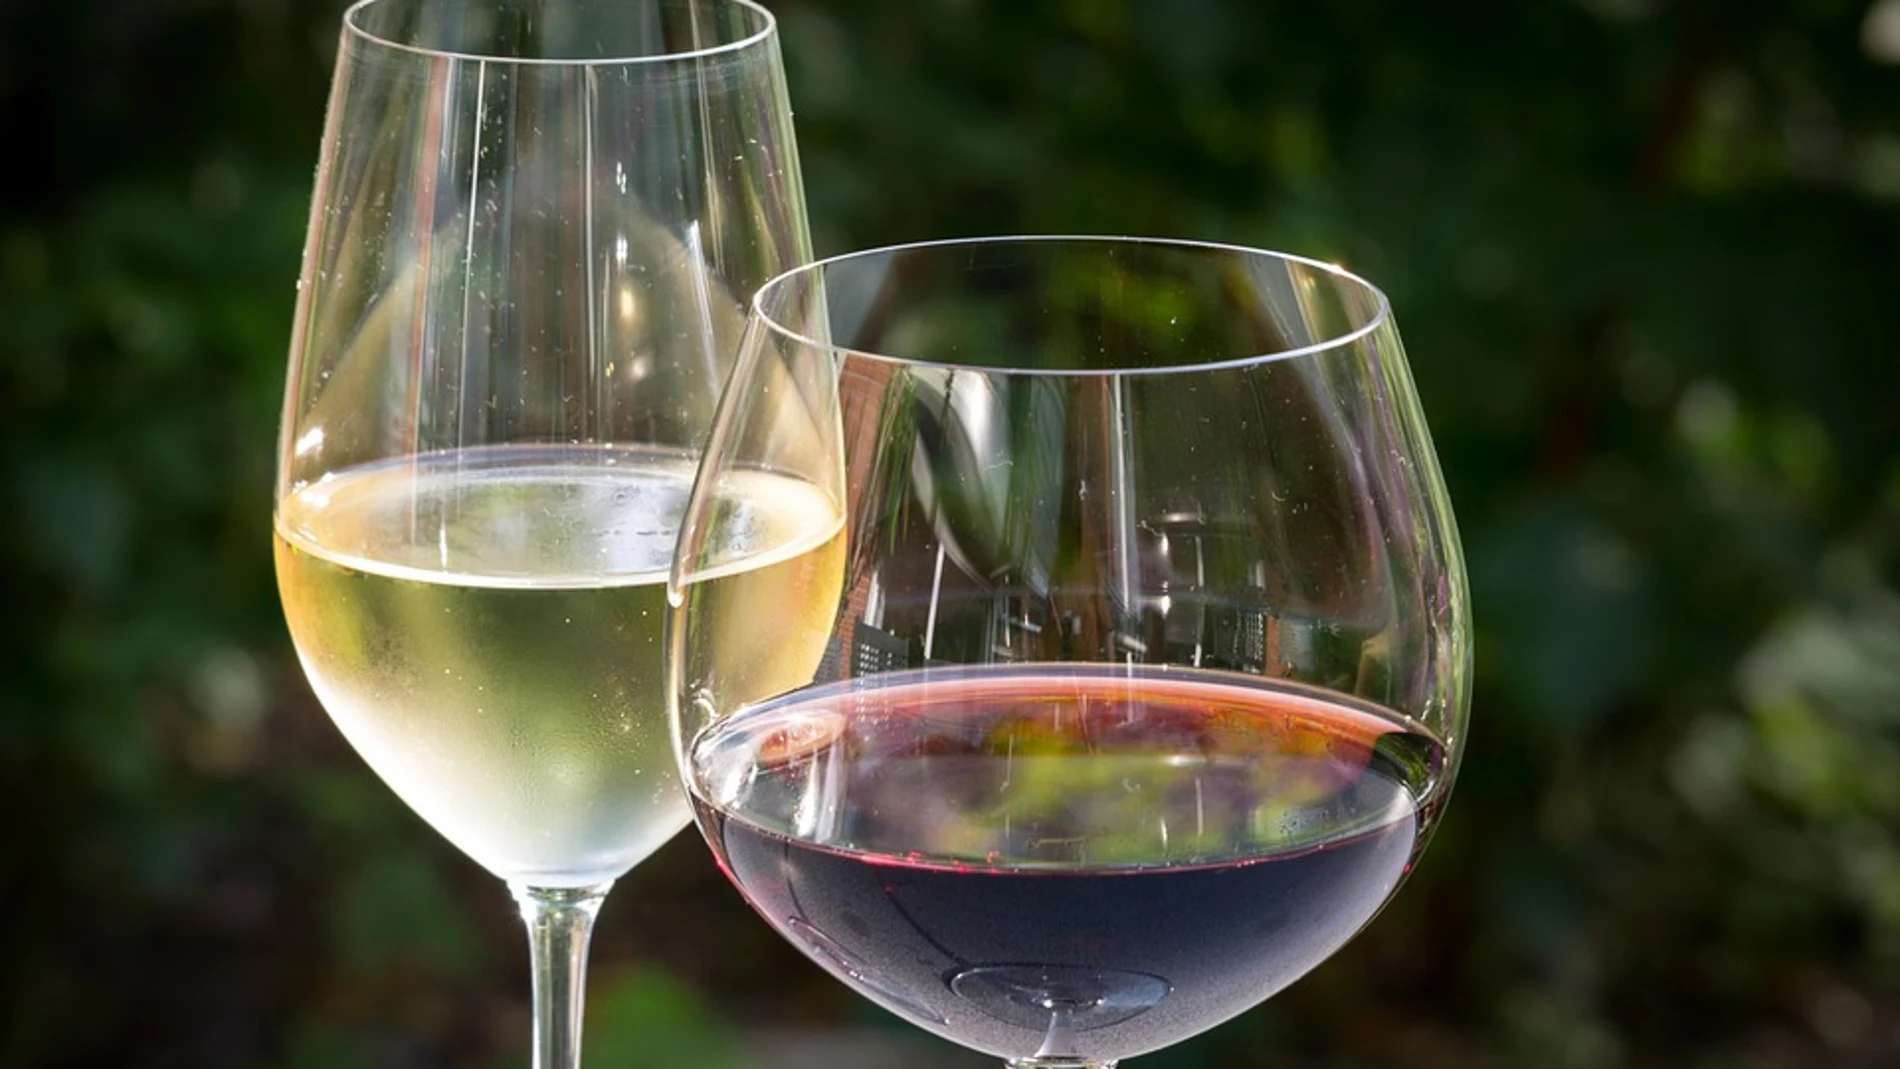 Copas de Cristal para Hostelería ideales para el Vino